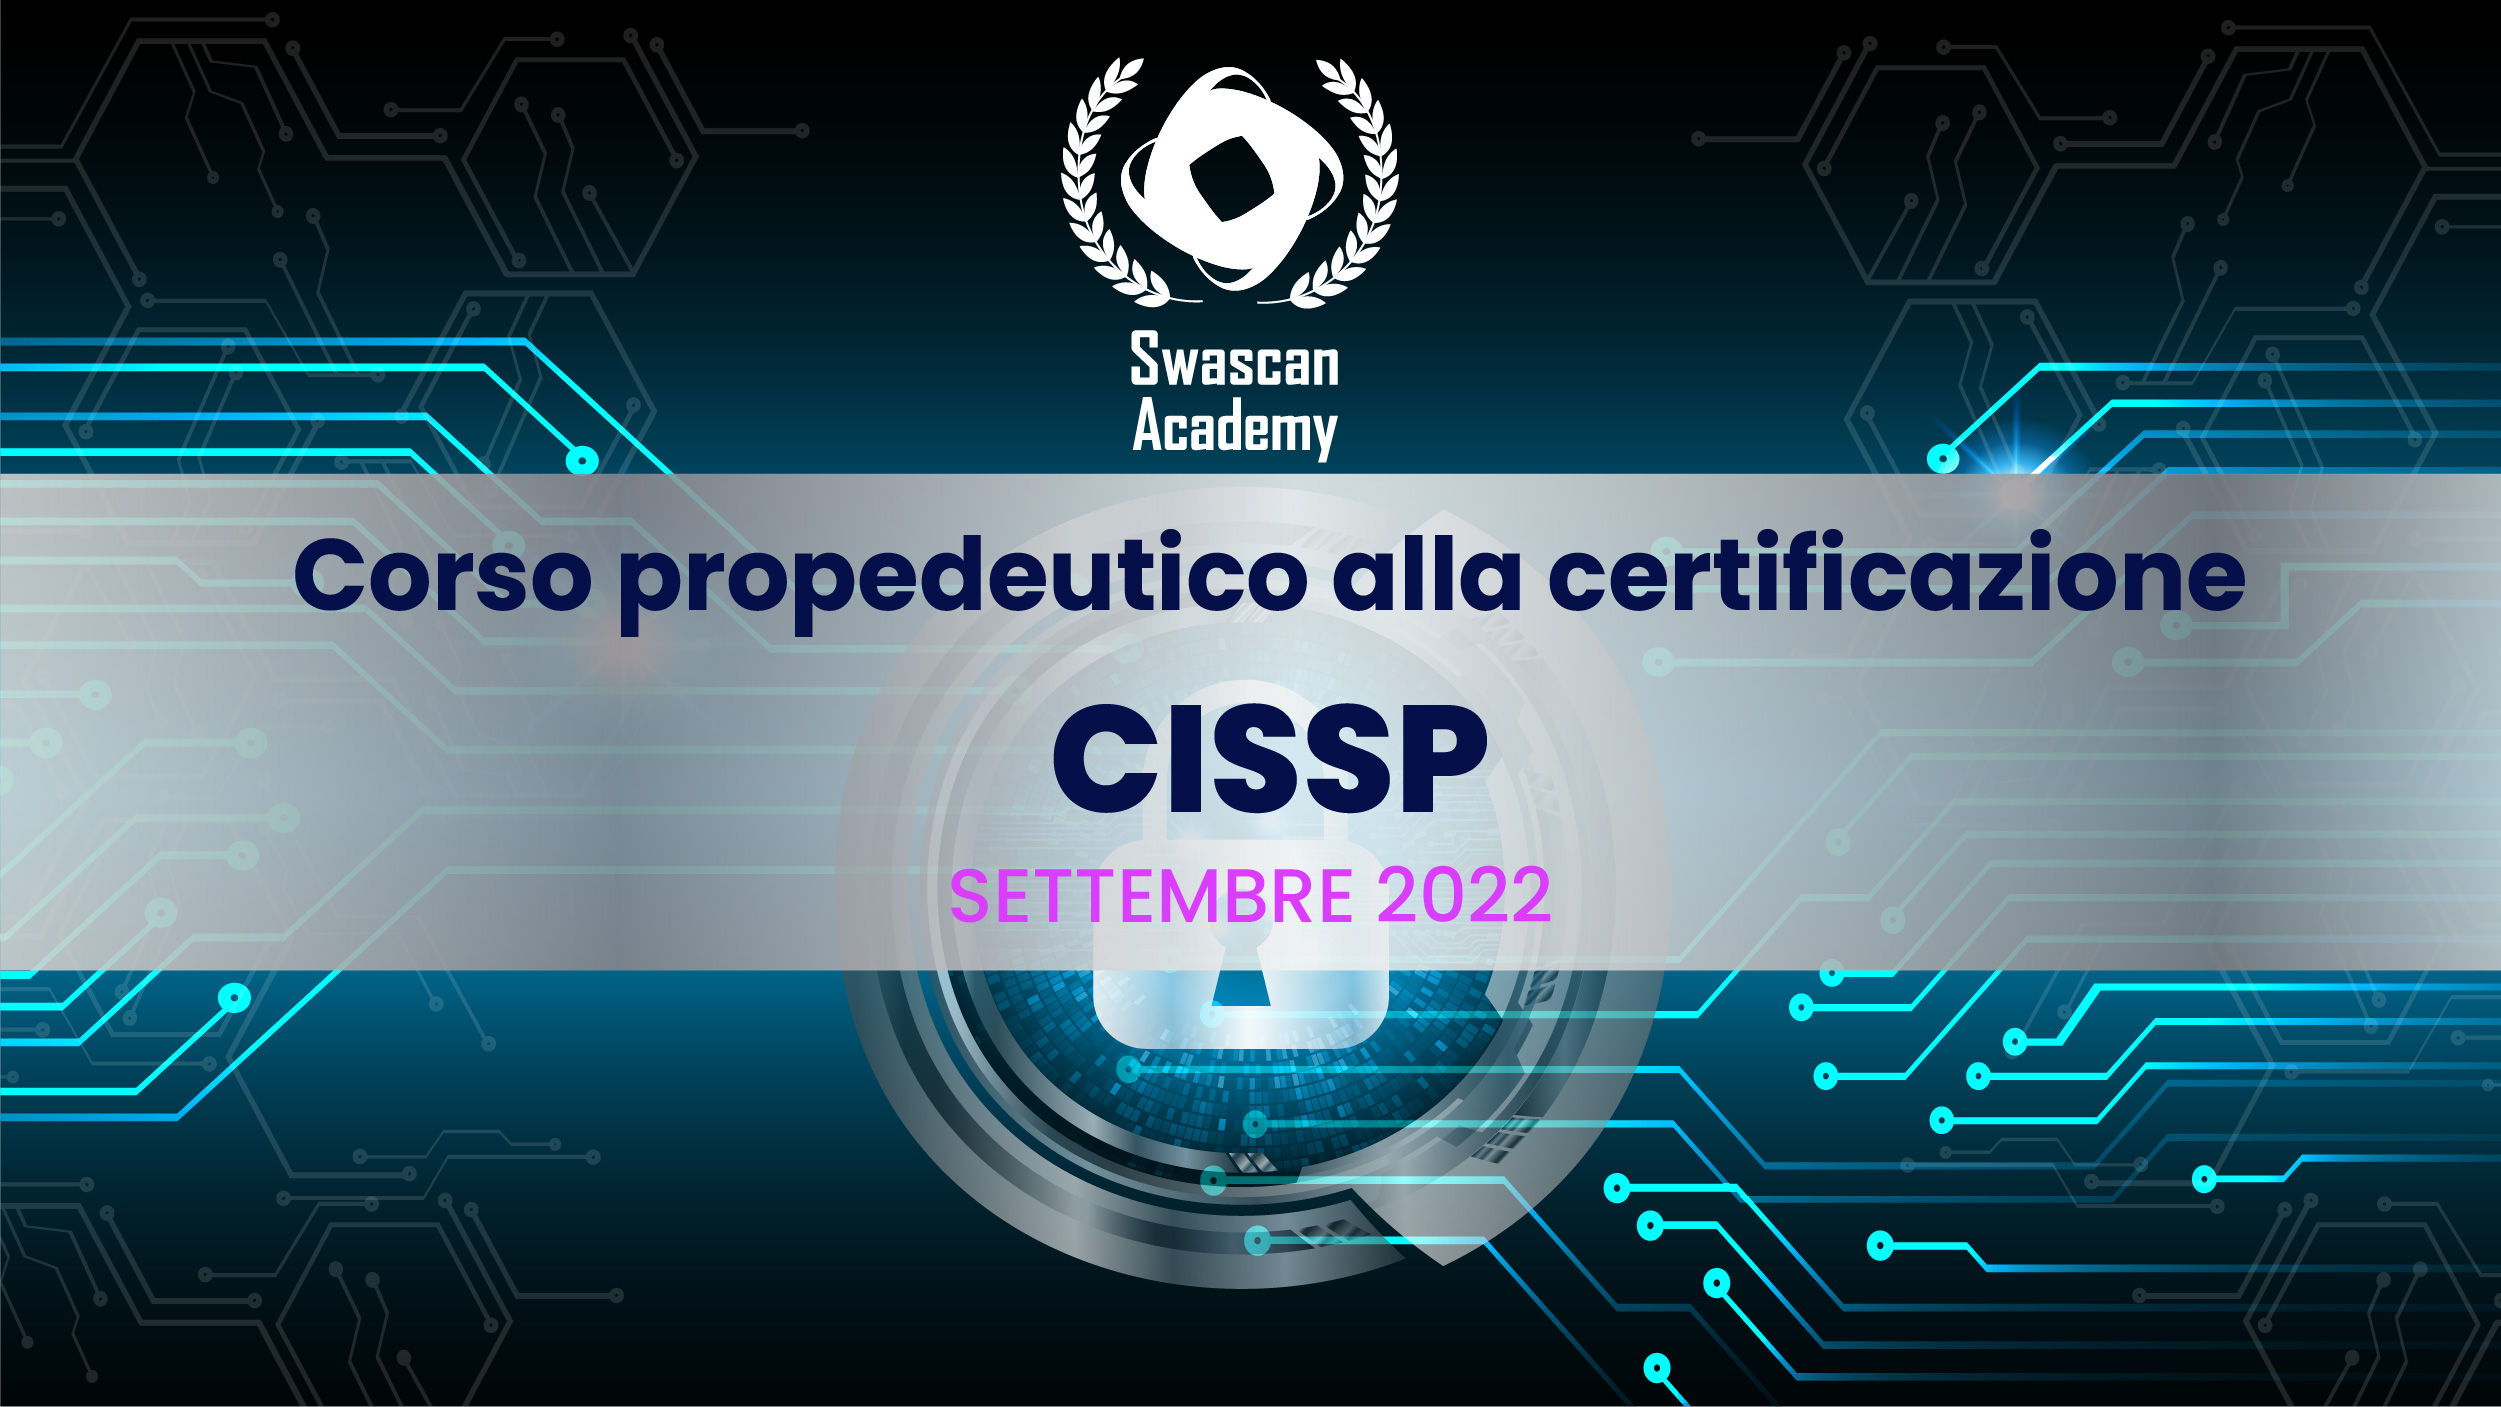 Swascan Academy lancia la Seconda Edizione del corso propedeutico alla Certificazione CISSP!